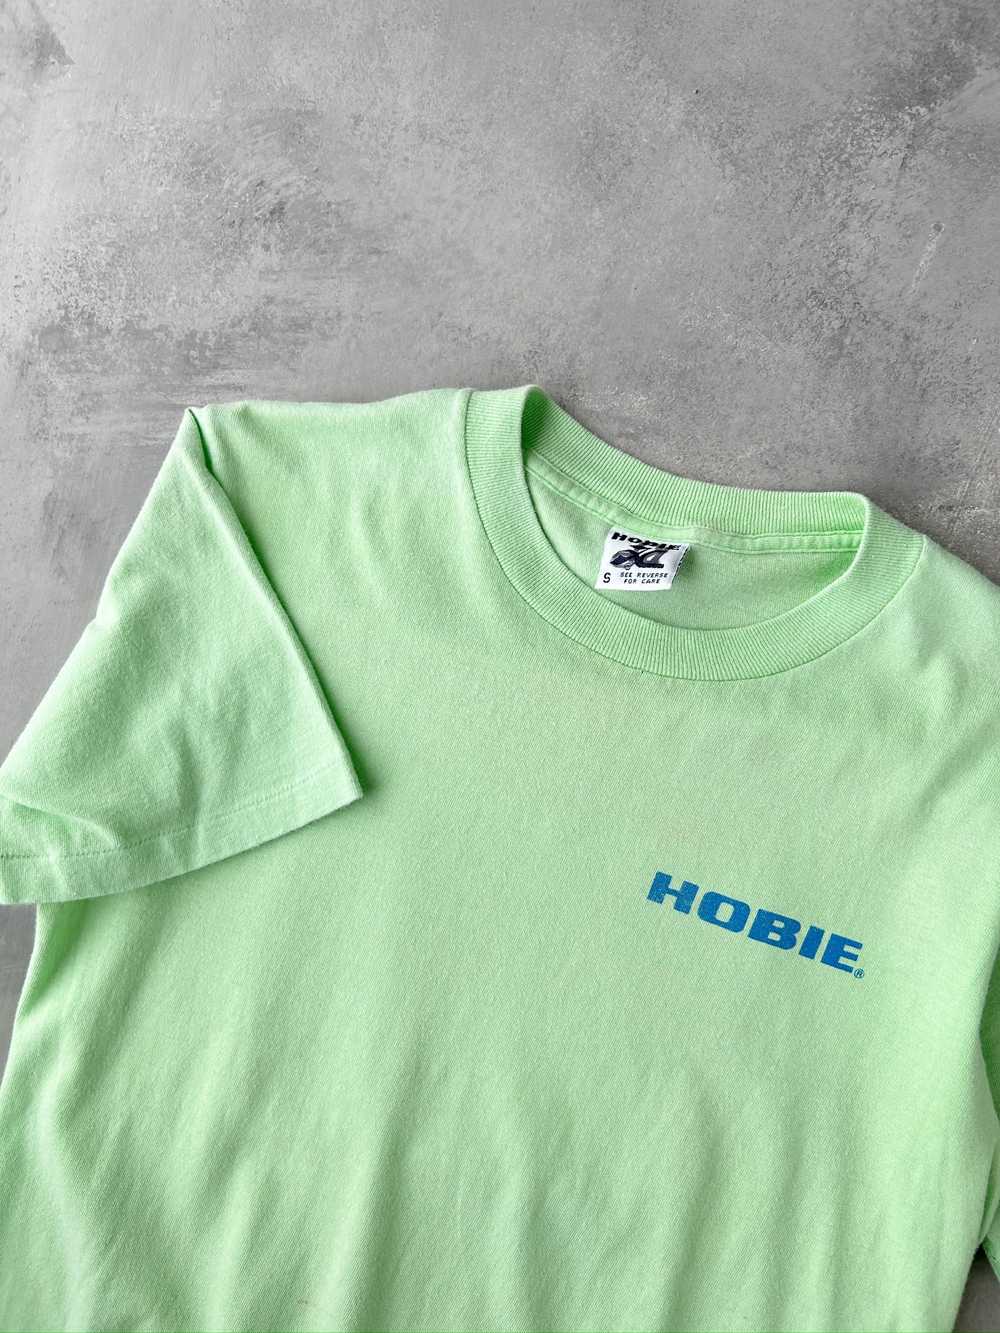 Hobie T-Shirt '88 - Small - image 2